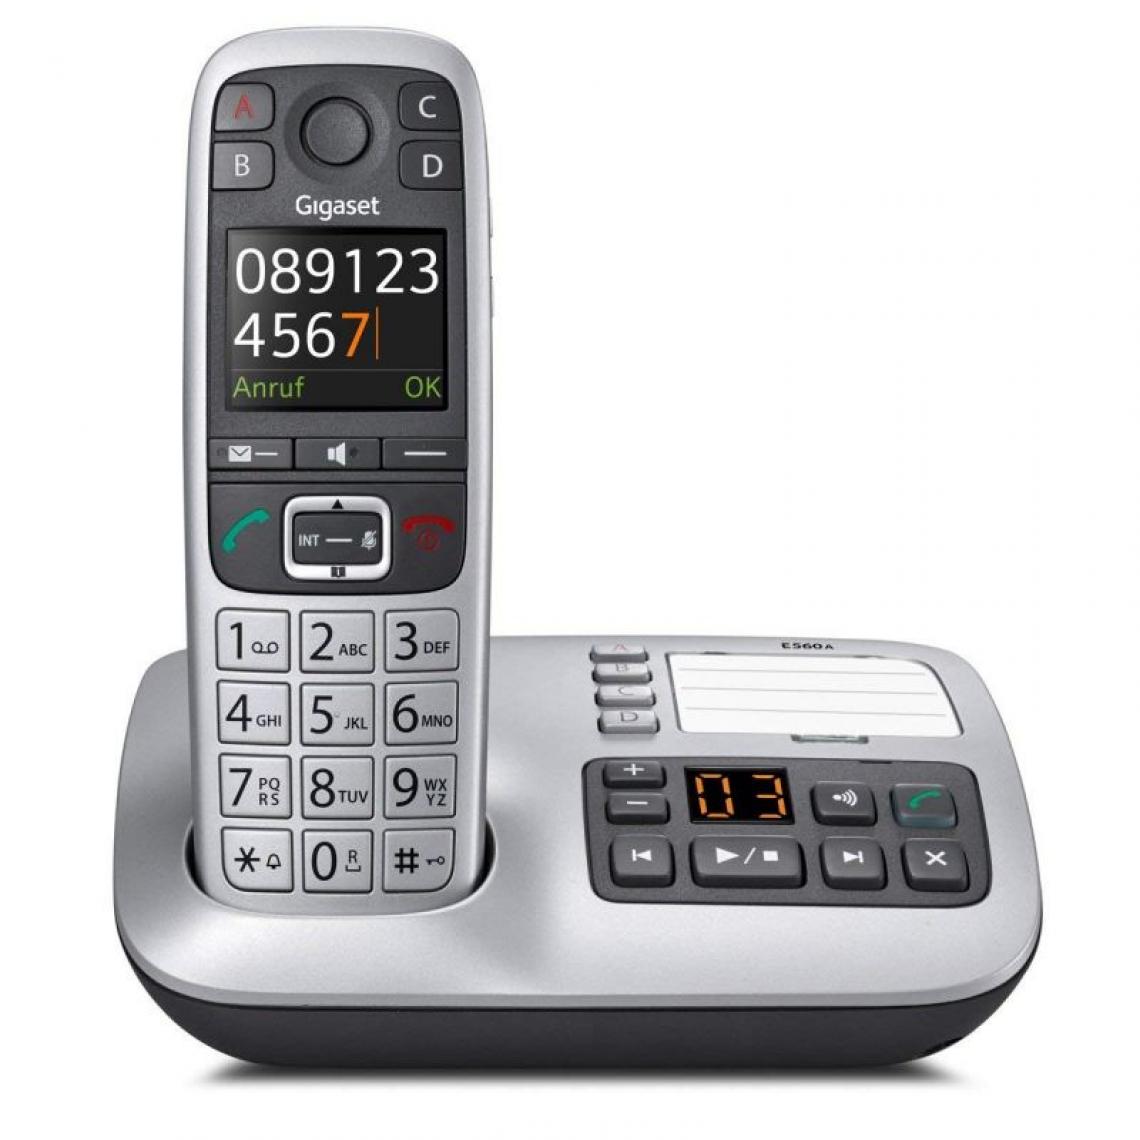 Gigaset - Gigaset Téléphone pour communiquer simplement - Téléphone fixe sans fil